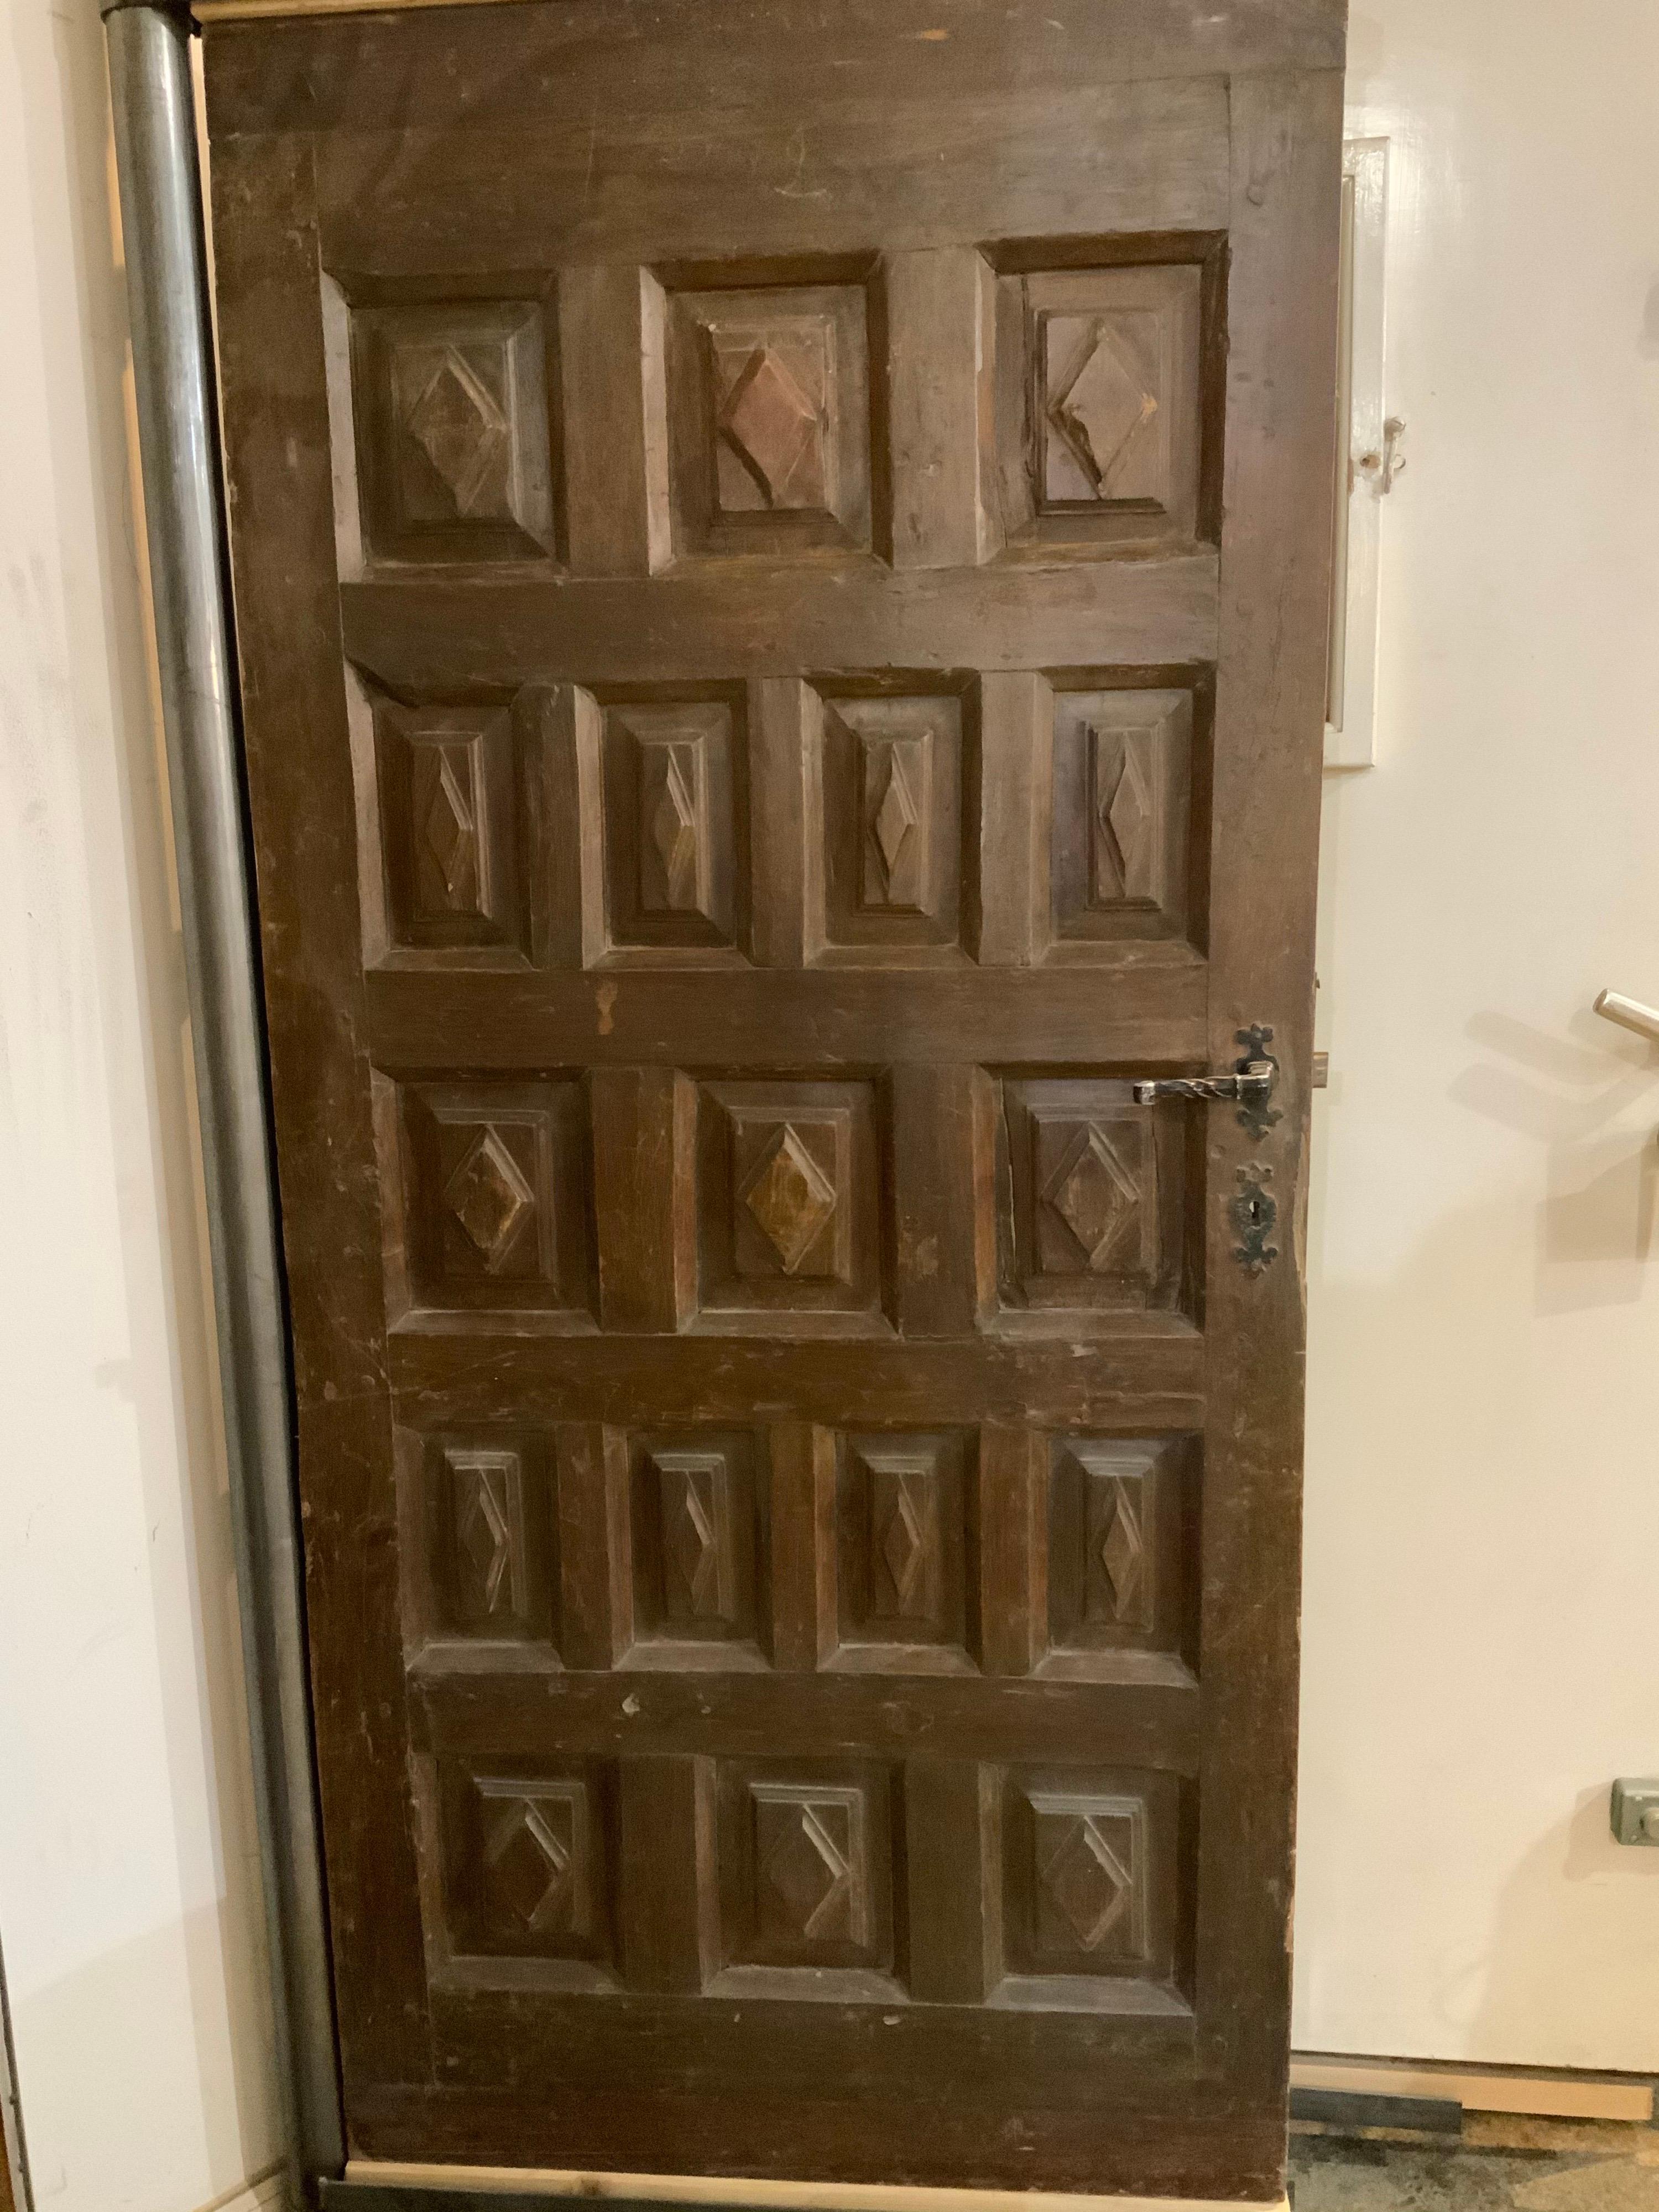 This maple door origins from Spain, circa 1850.